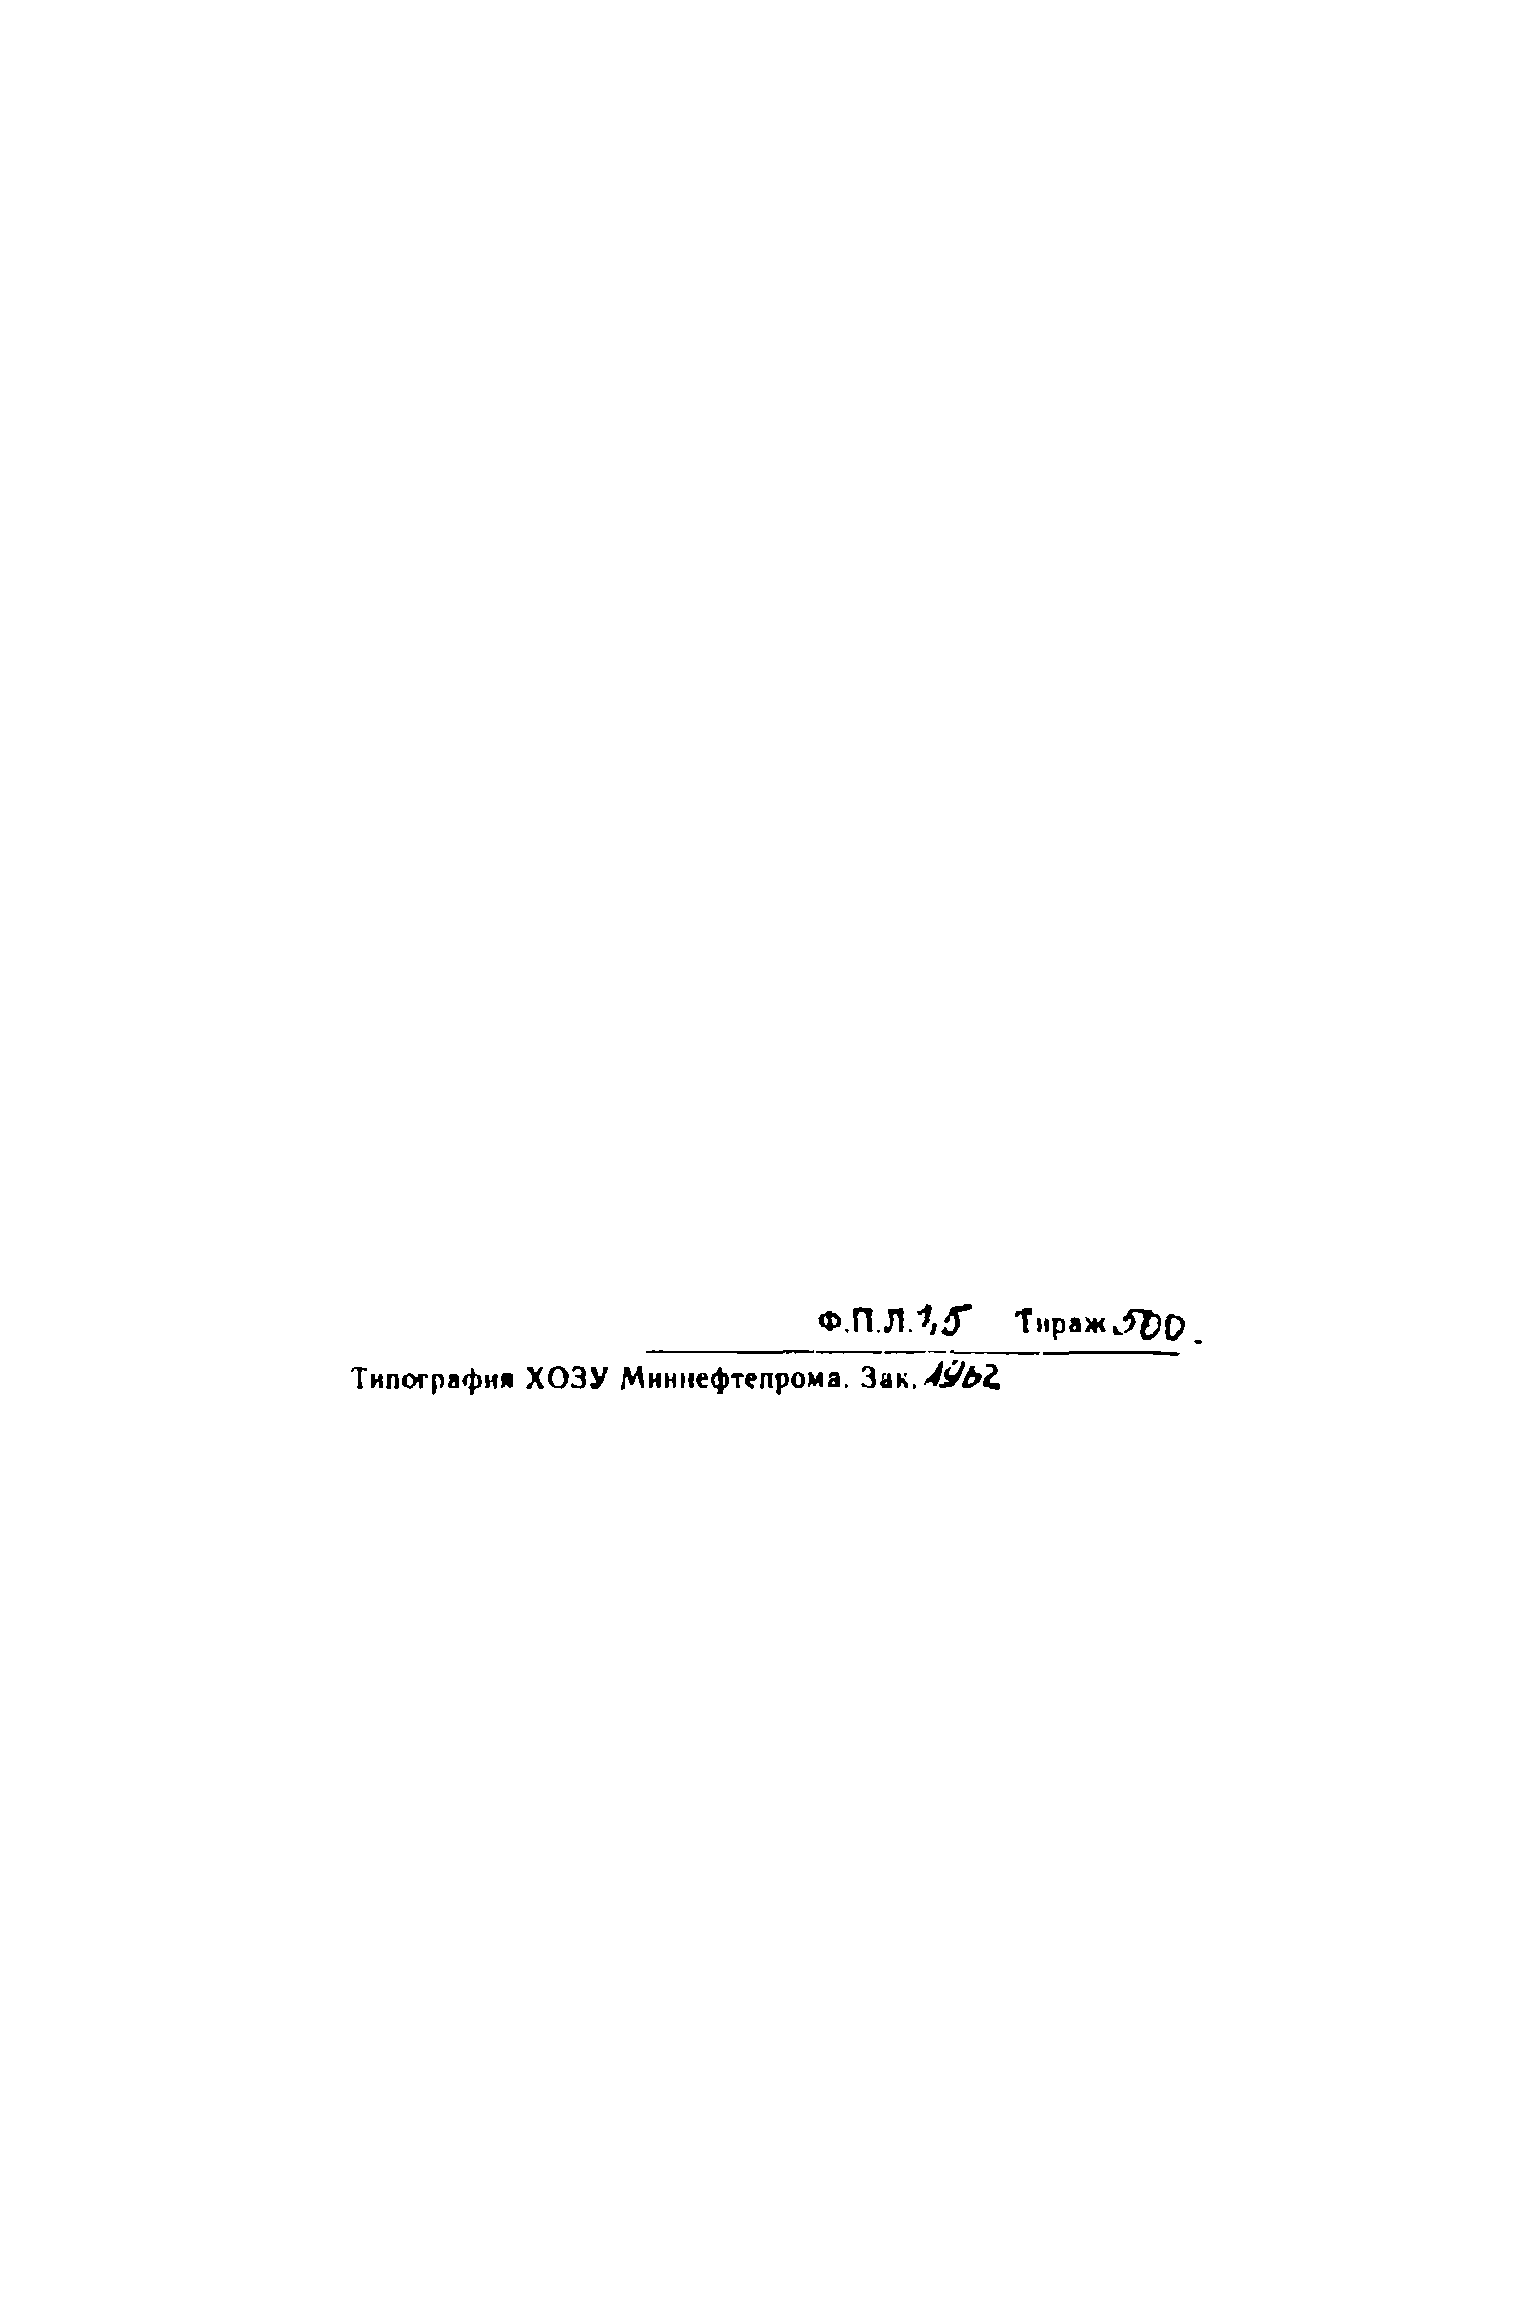 РДС 39-01-016-78